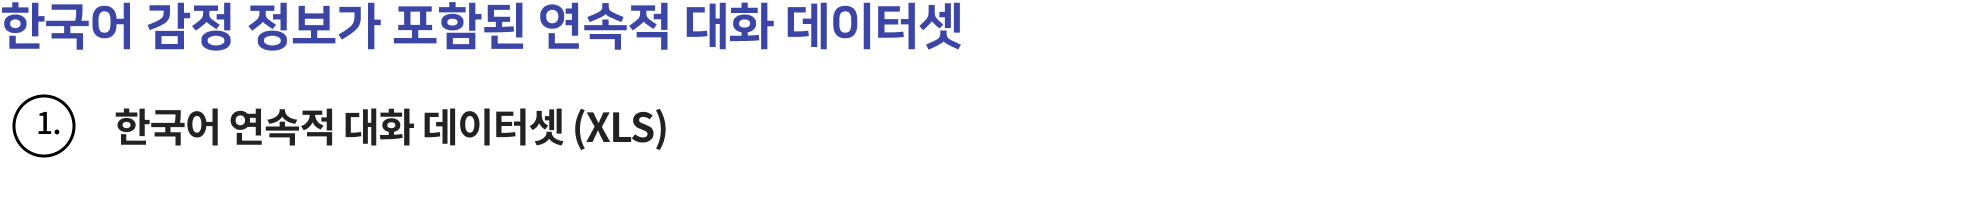 한국어 감정 정보가 포함된 연속적 대화 데이터셋- 다운로드 폴더 구성 정보